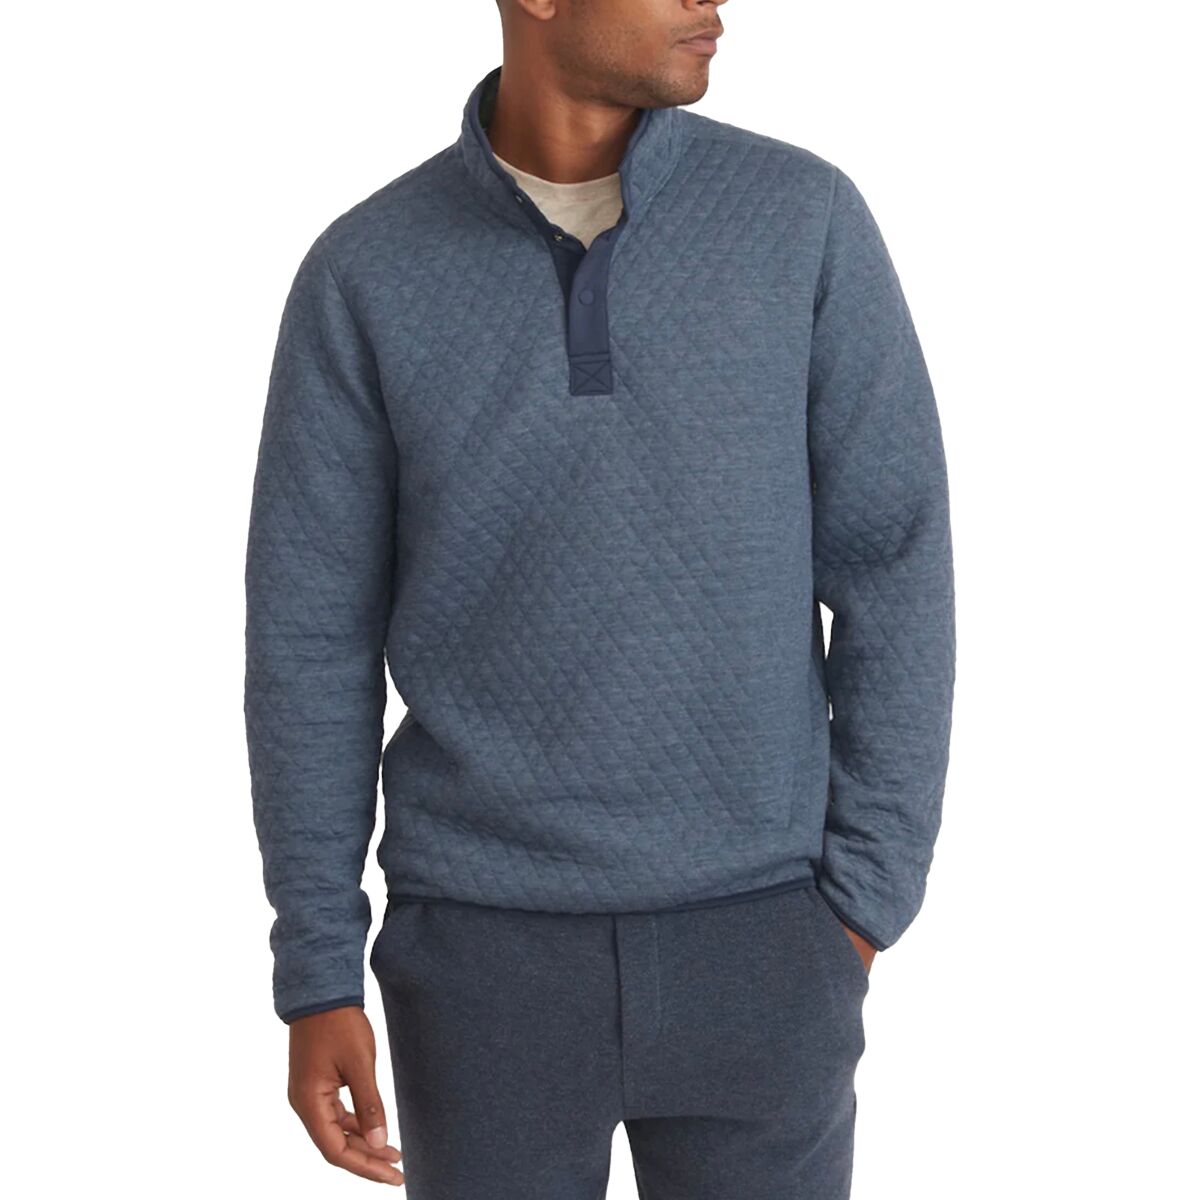 Двусторонний флисовый пуловер в стиле корбет Marine Layer Marine Layer